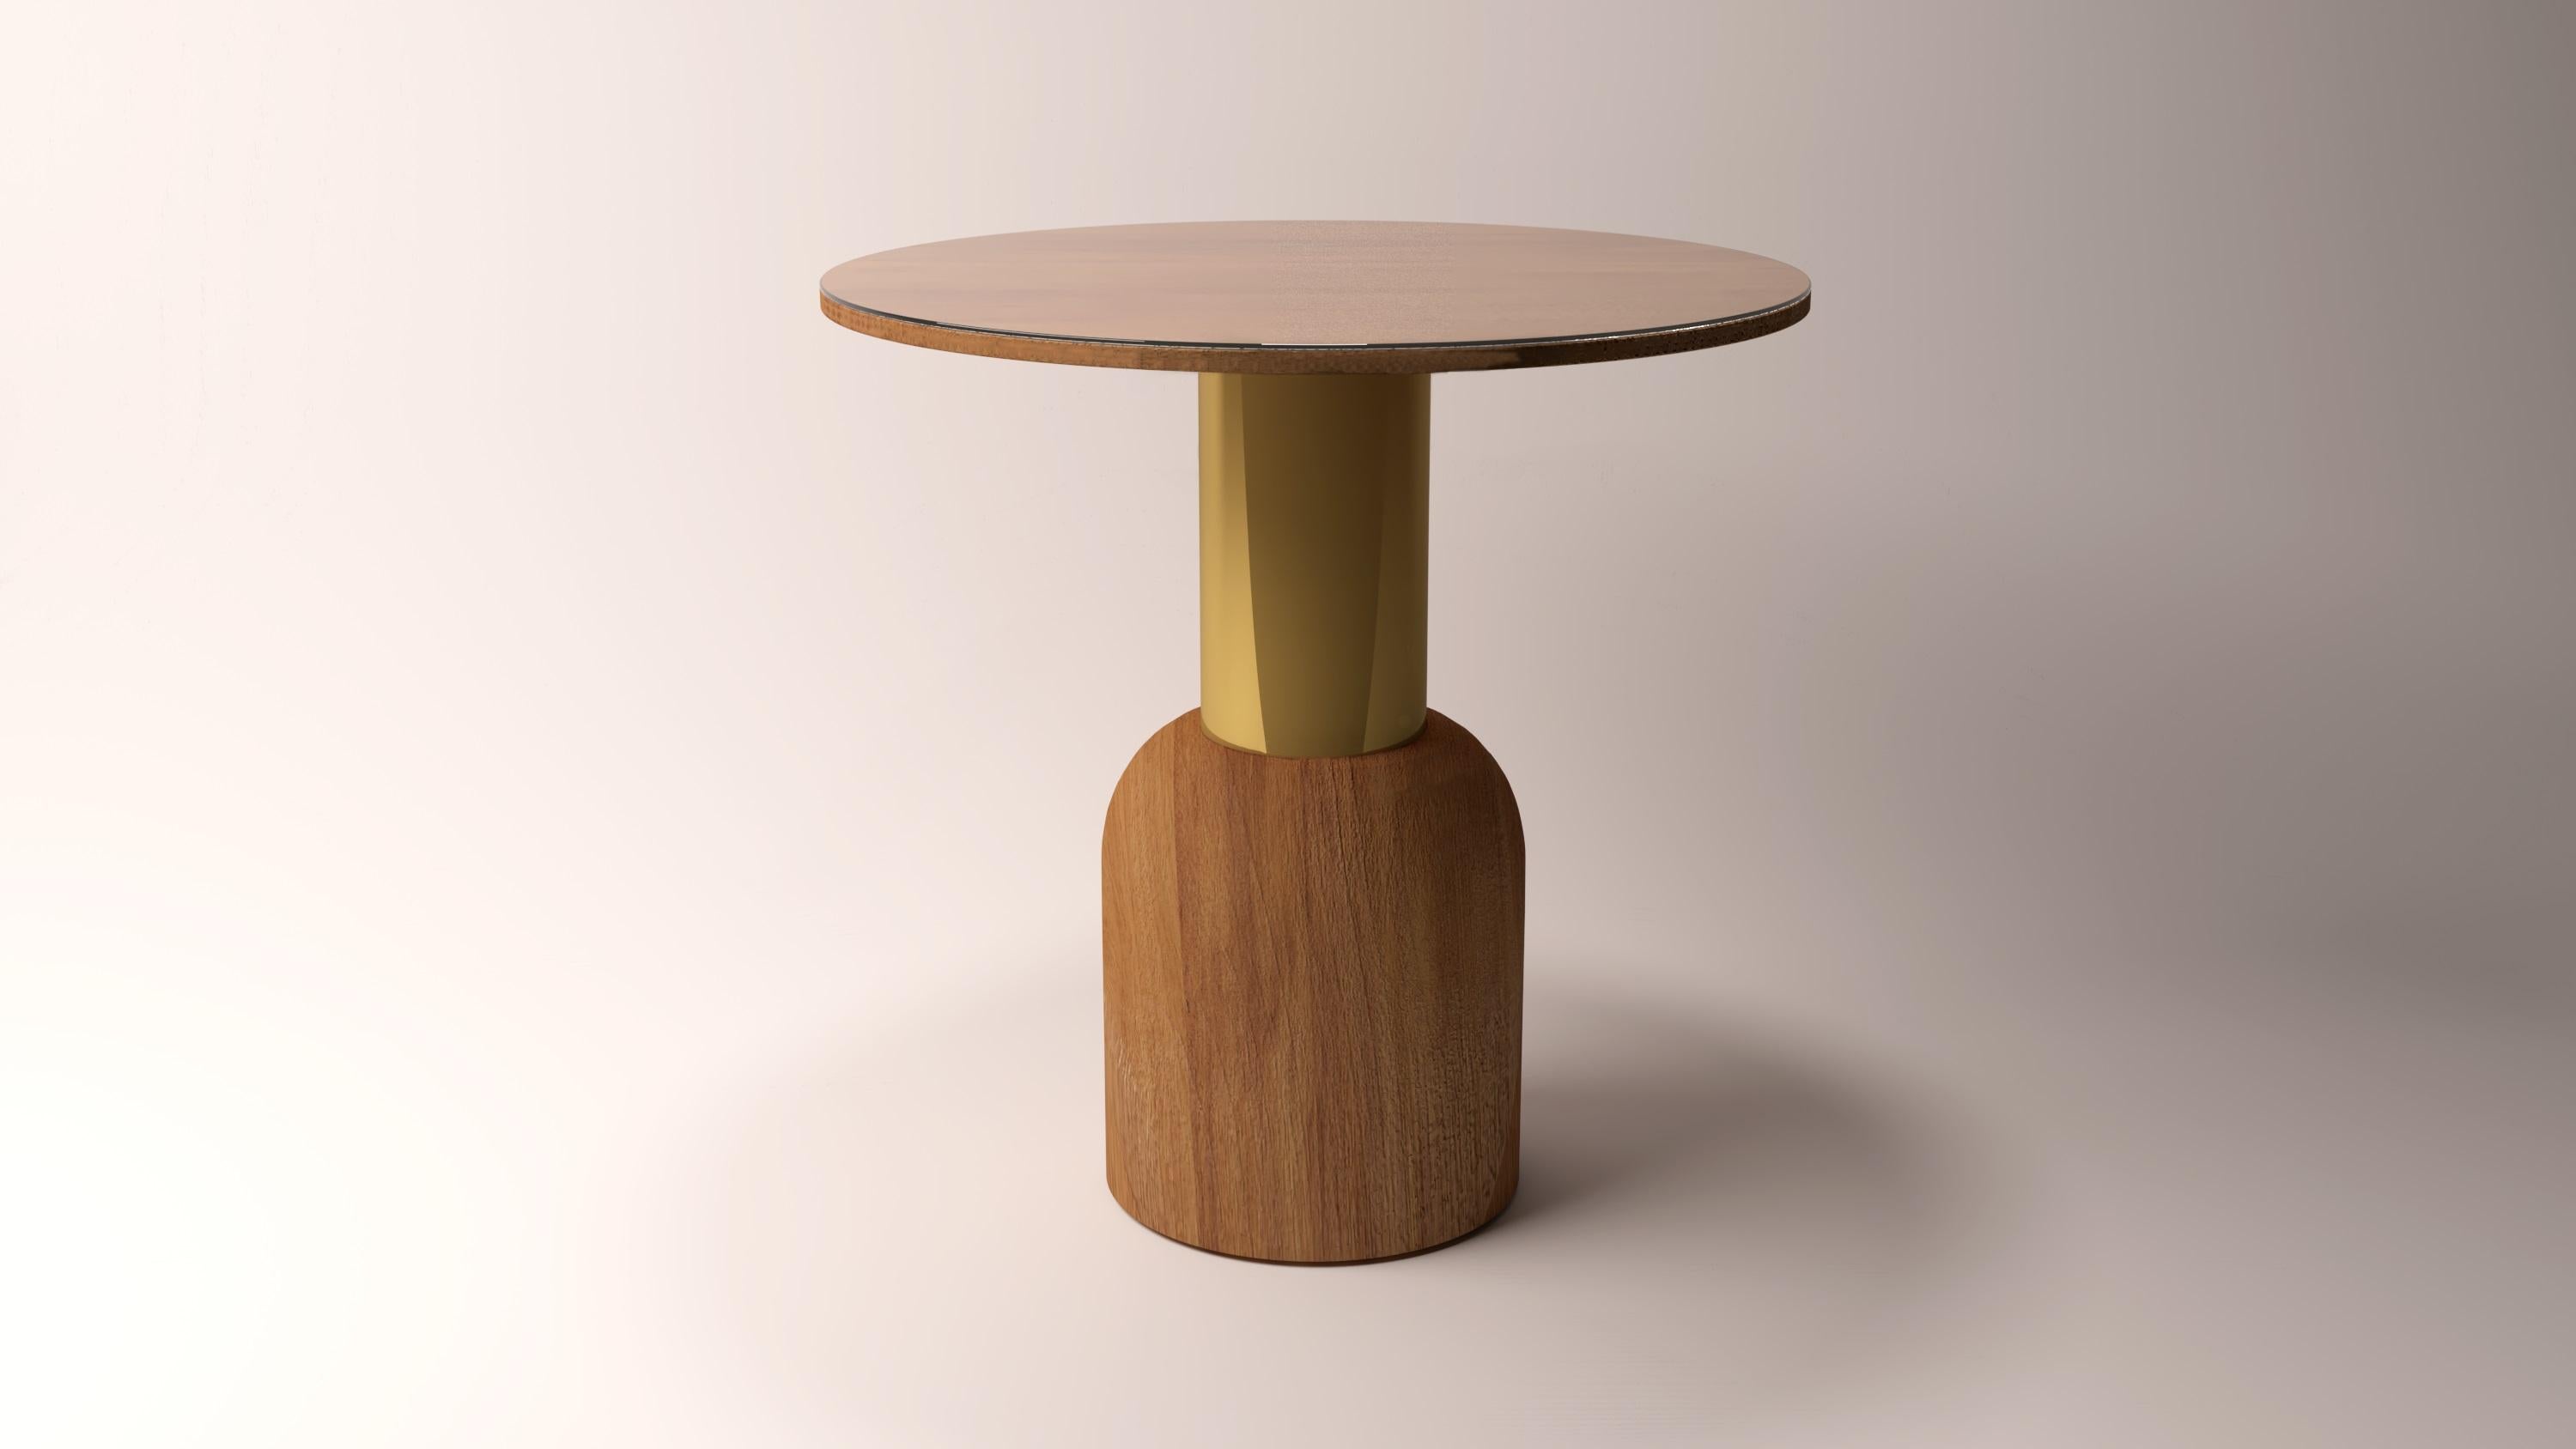 Table Serenity Fusion 50 Iroko en bois par Alabastro Italiano
Dimensions : D 50 x H 50 cm.
MATERIAL : Bois d'iroko, métal.
12,5 kg.

Disponible dans une autre taille : H 40 cm.
Disponible dans d'autres finitions métalliques.
Disponible en